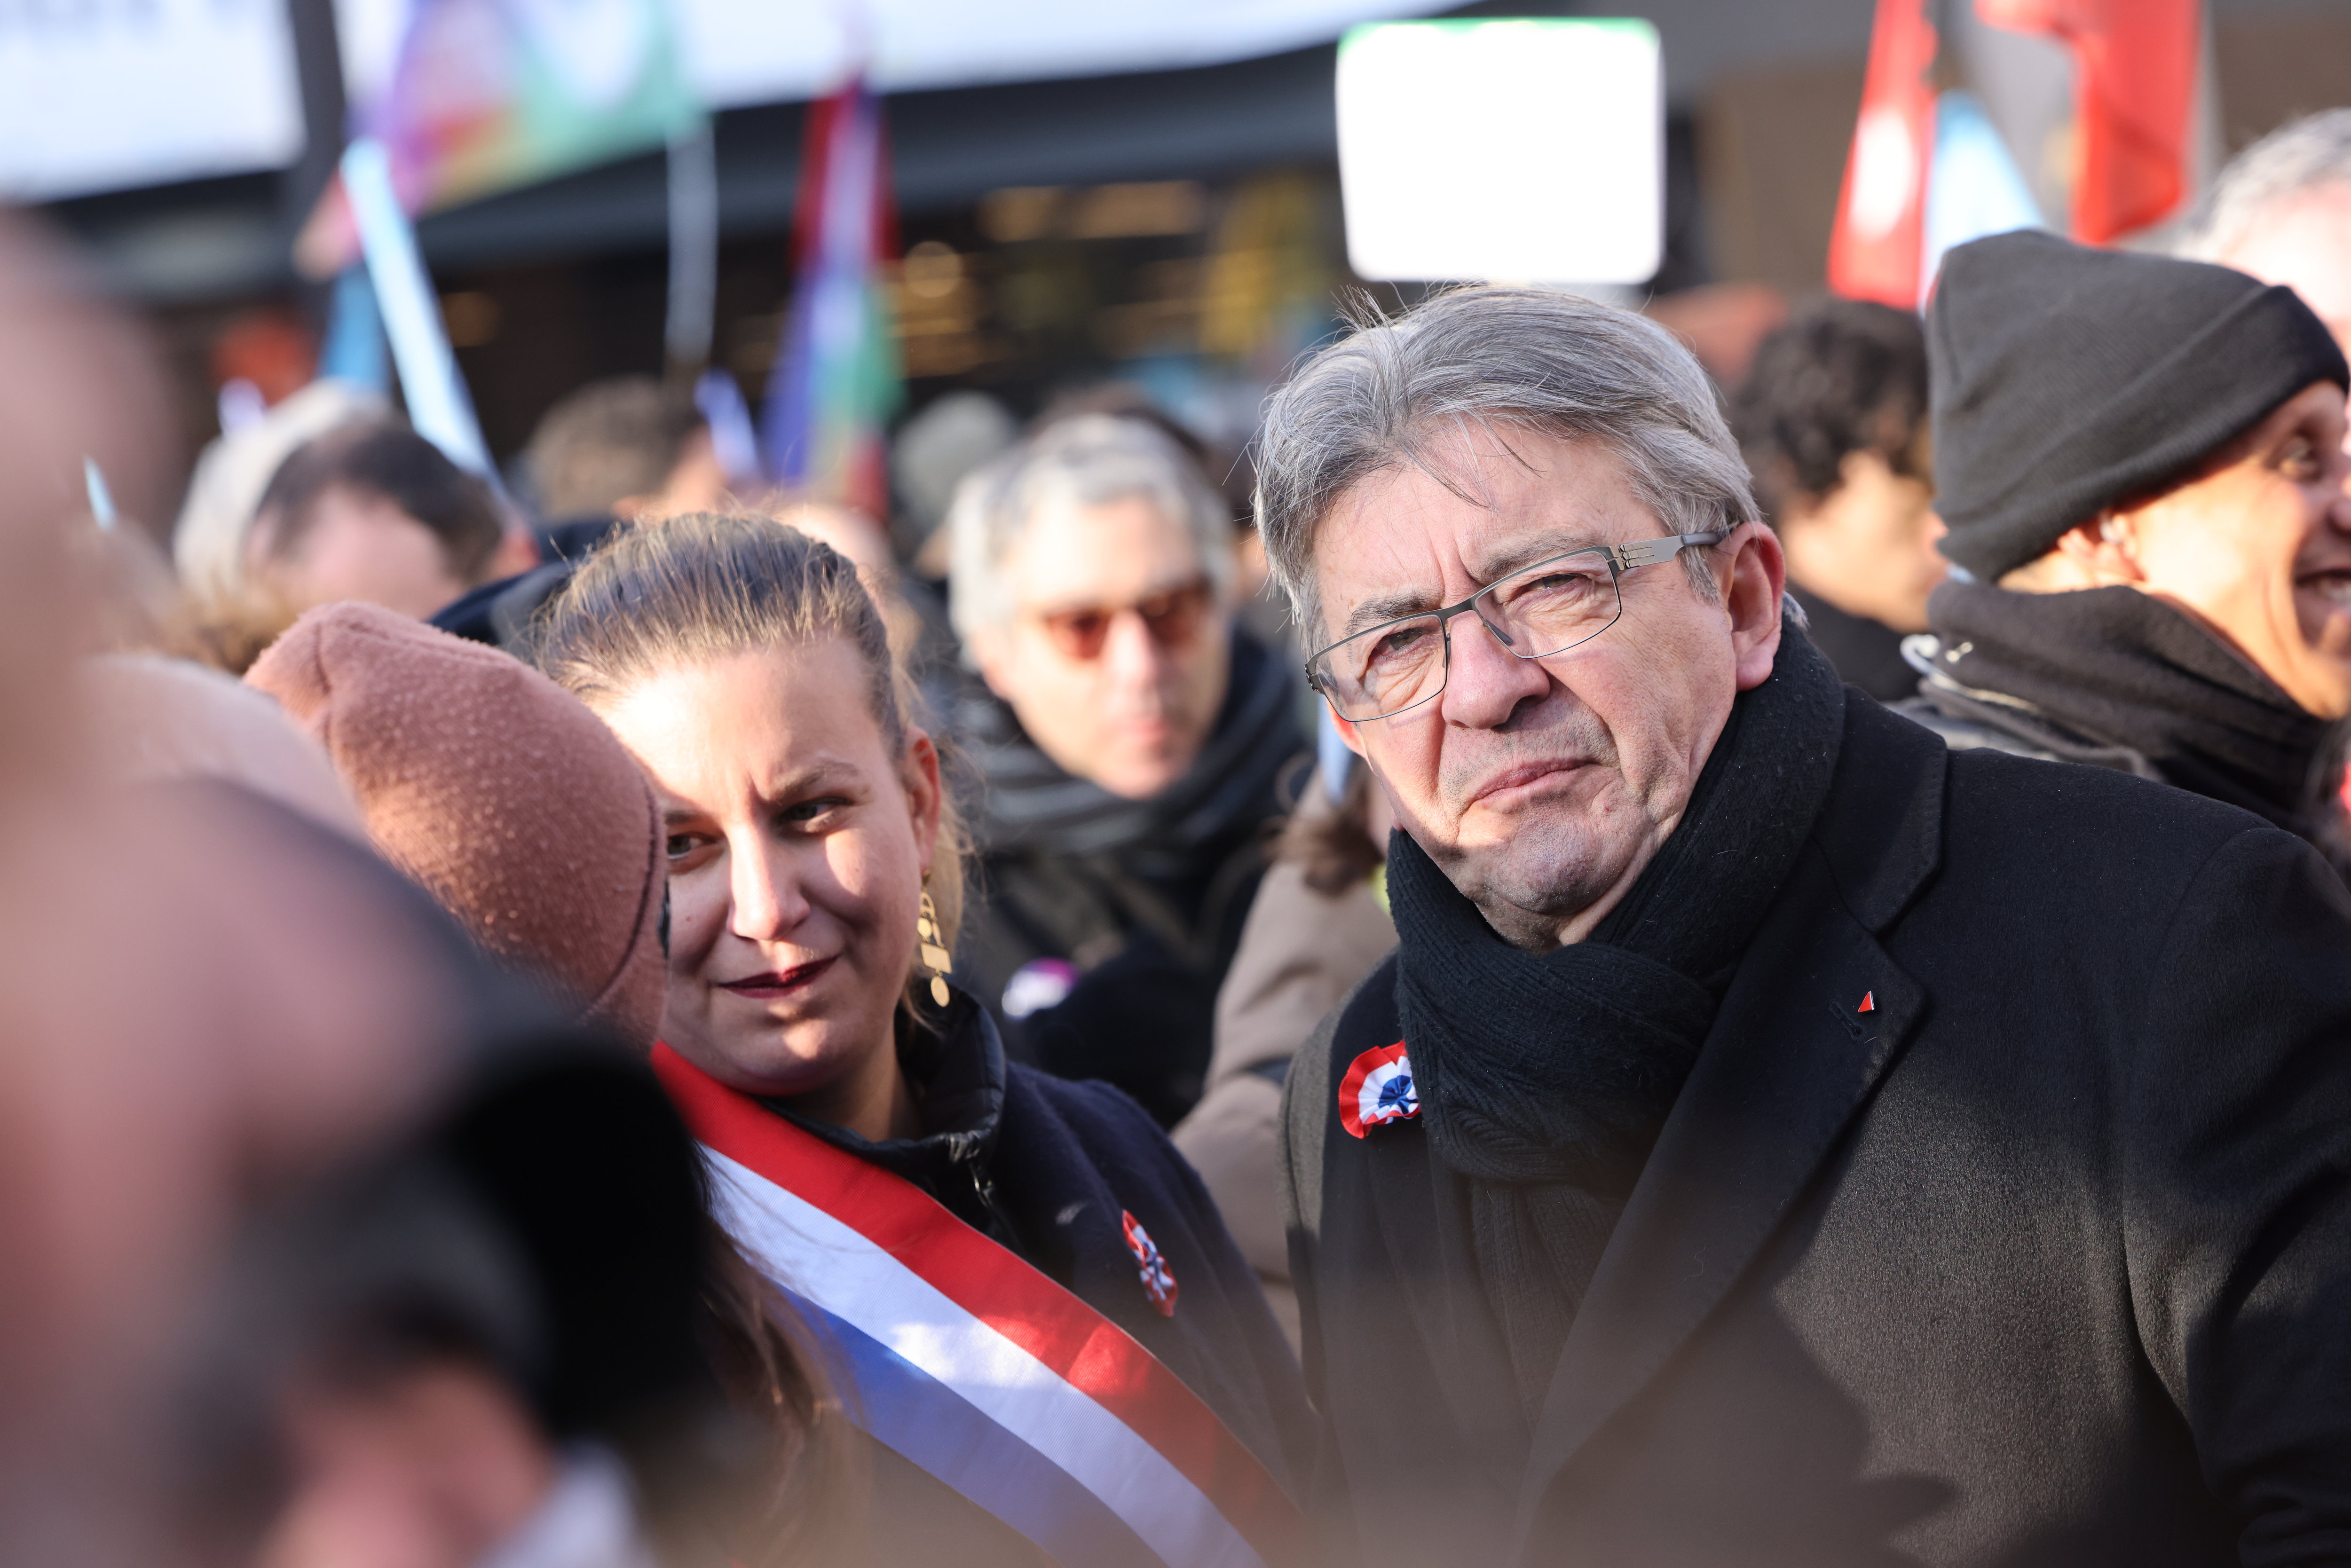 Le 21 janvier dernier, LFI s’était associée aux organisations de jeunesses pour défiler à Paris contre le texte du gouvernement concernant les retraites. LP/Arnaud Journois